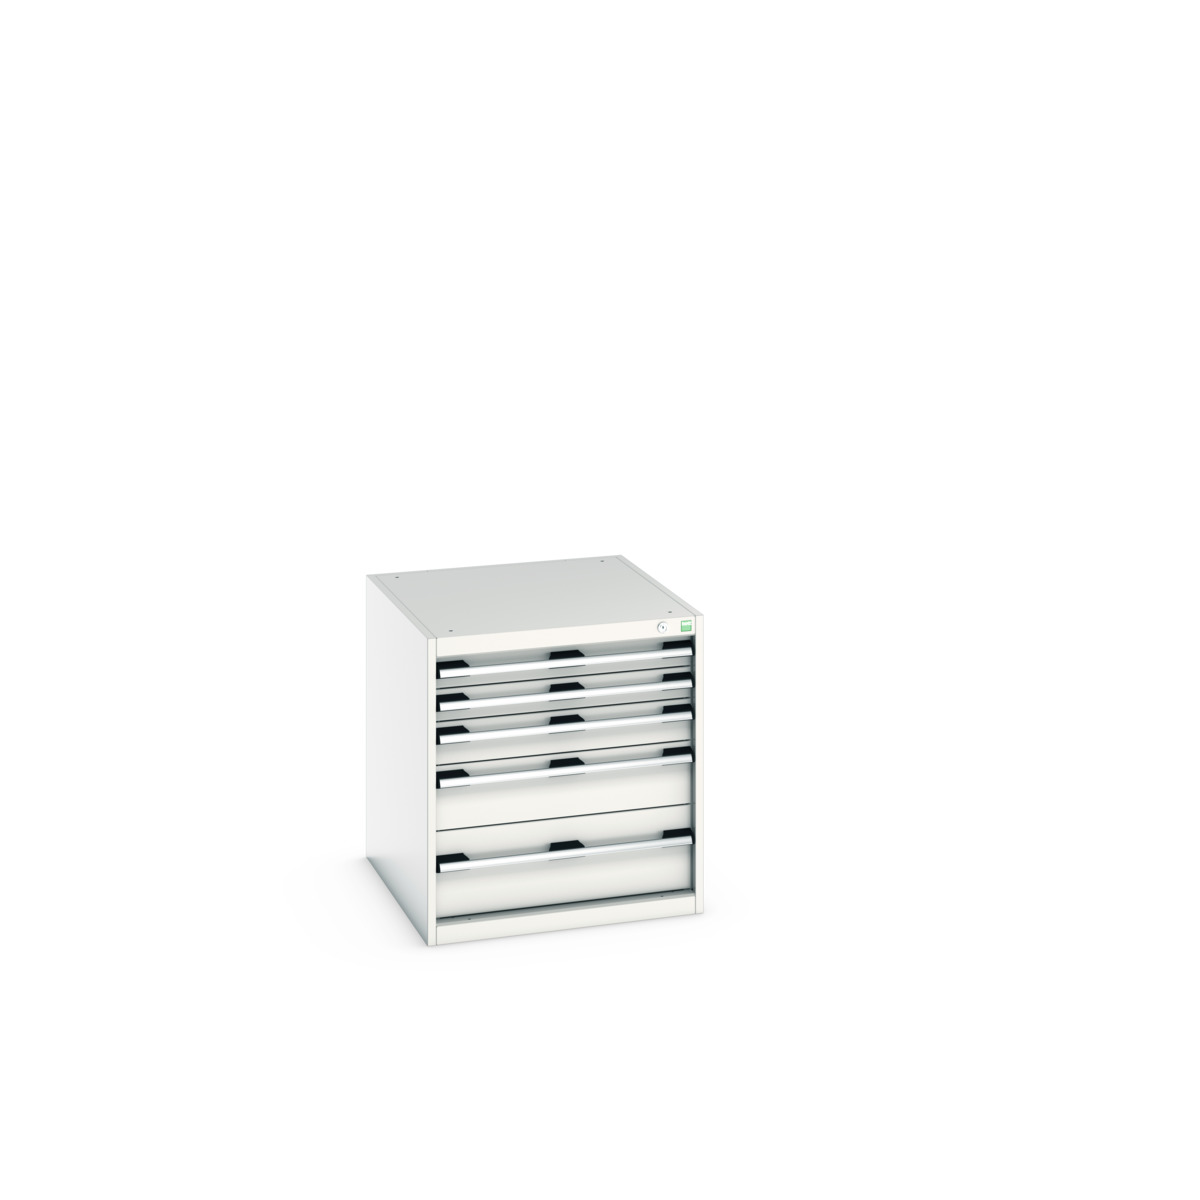 40027007.16V - cubio drawer cabinet